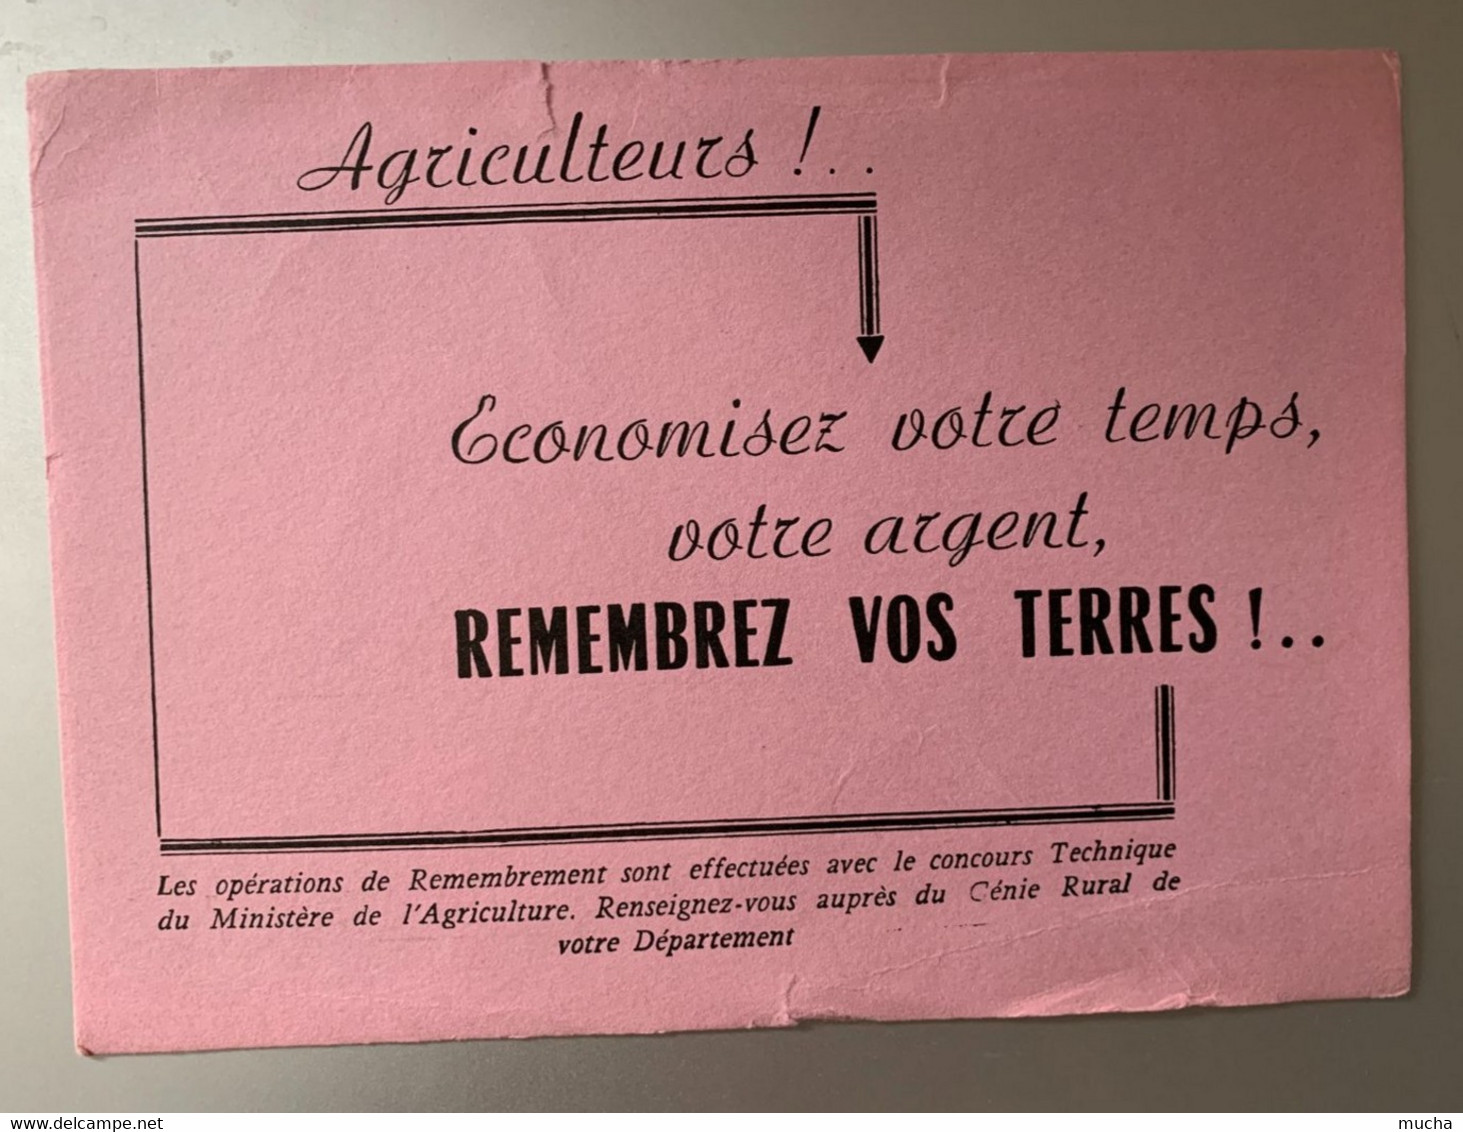 34 - Buvard Agriculteurs Economisez Votre Temps, Votre Argent Remembrez Vos Terres !! - Farm